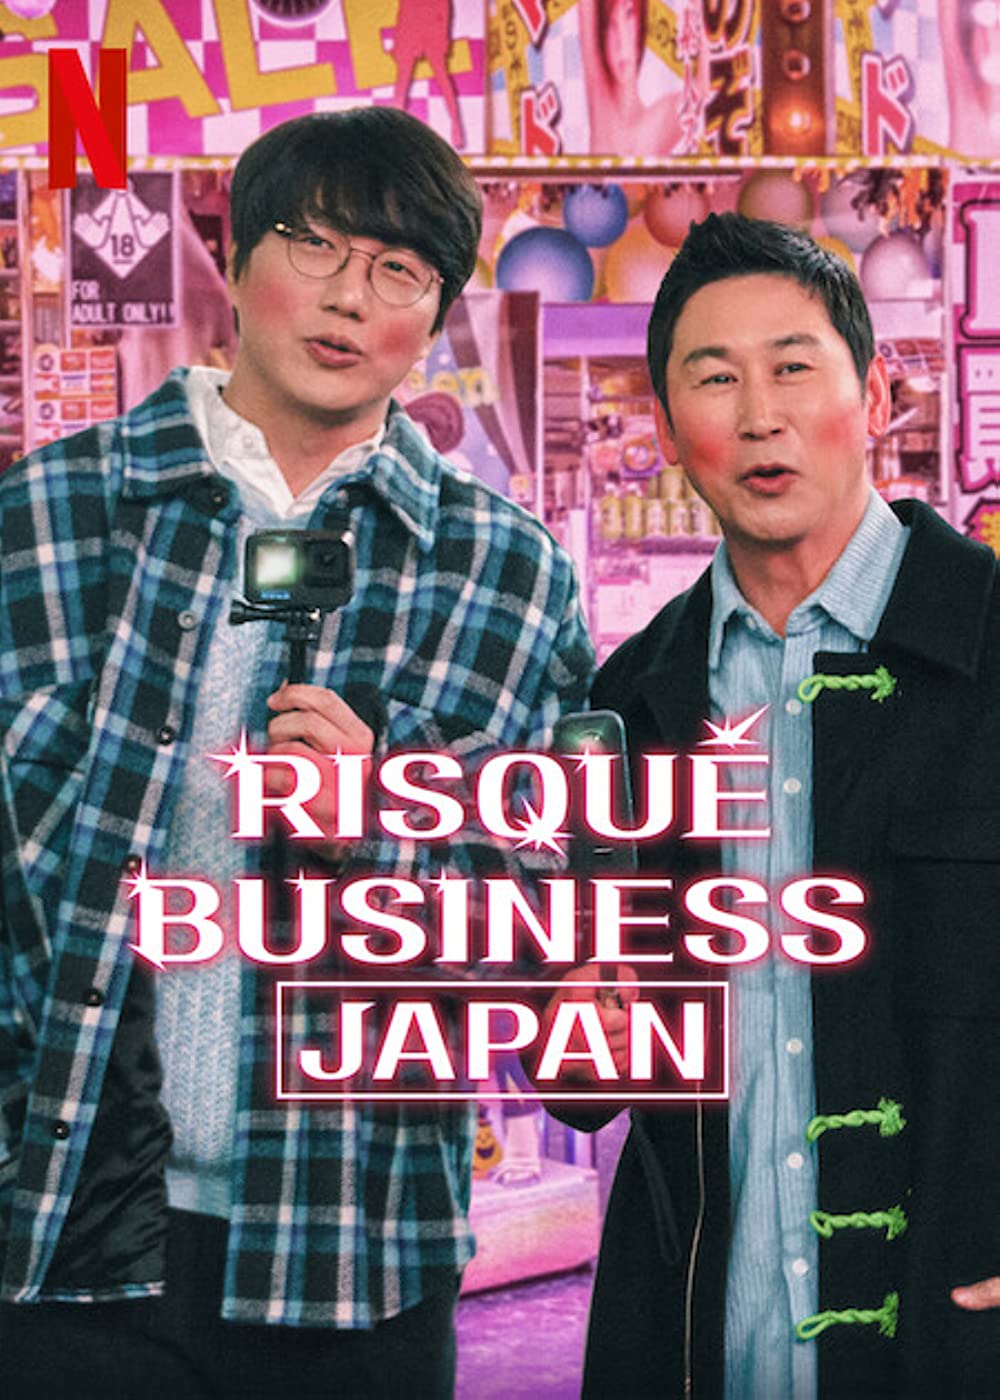 ดูหนังออนไลน์ Risqué Business Japan ธุรกิจติดเรท ญี่ปุ่น ซับไทย (จบ)